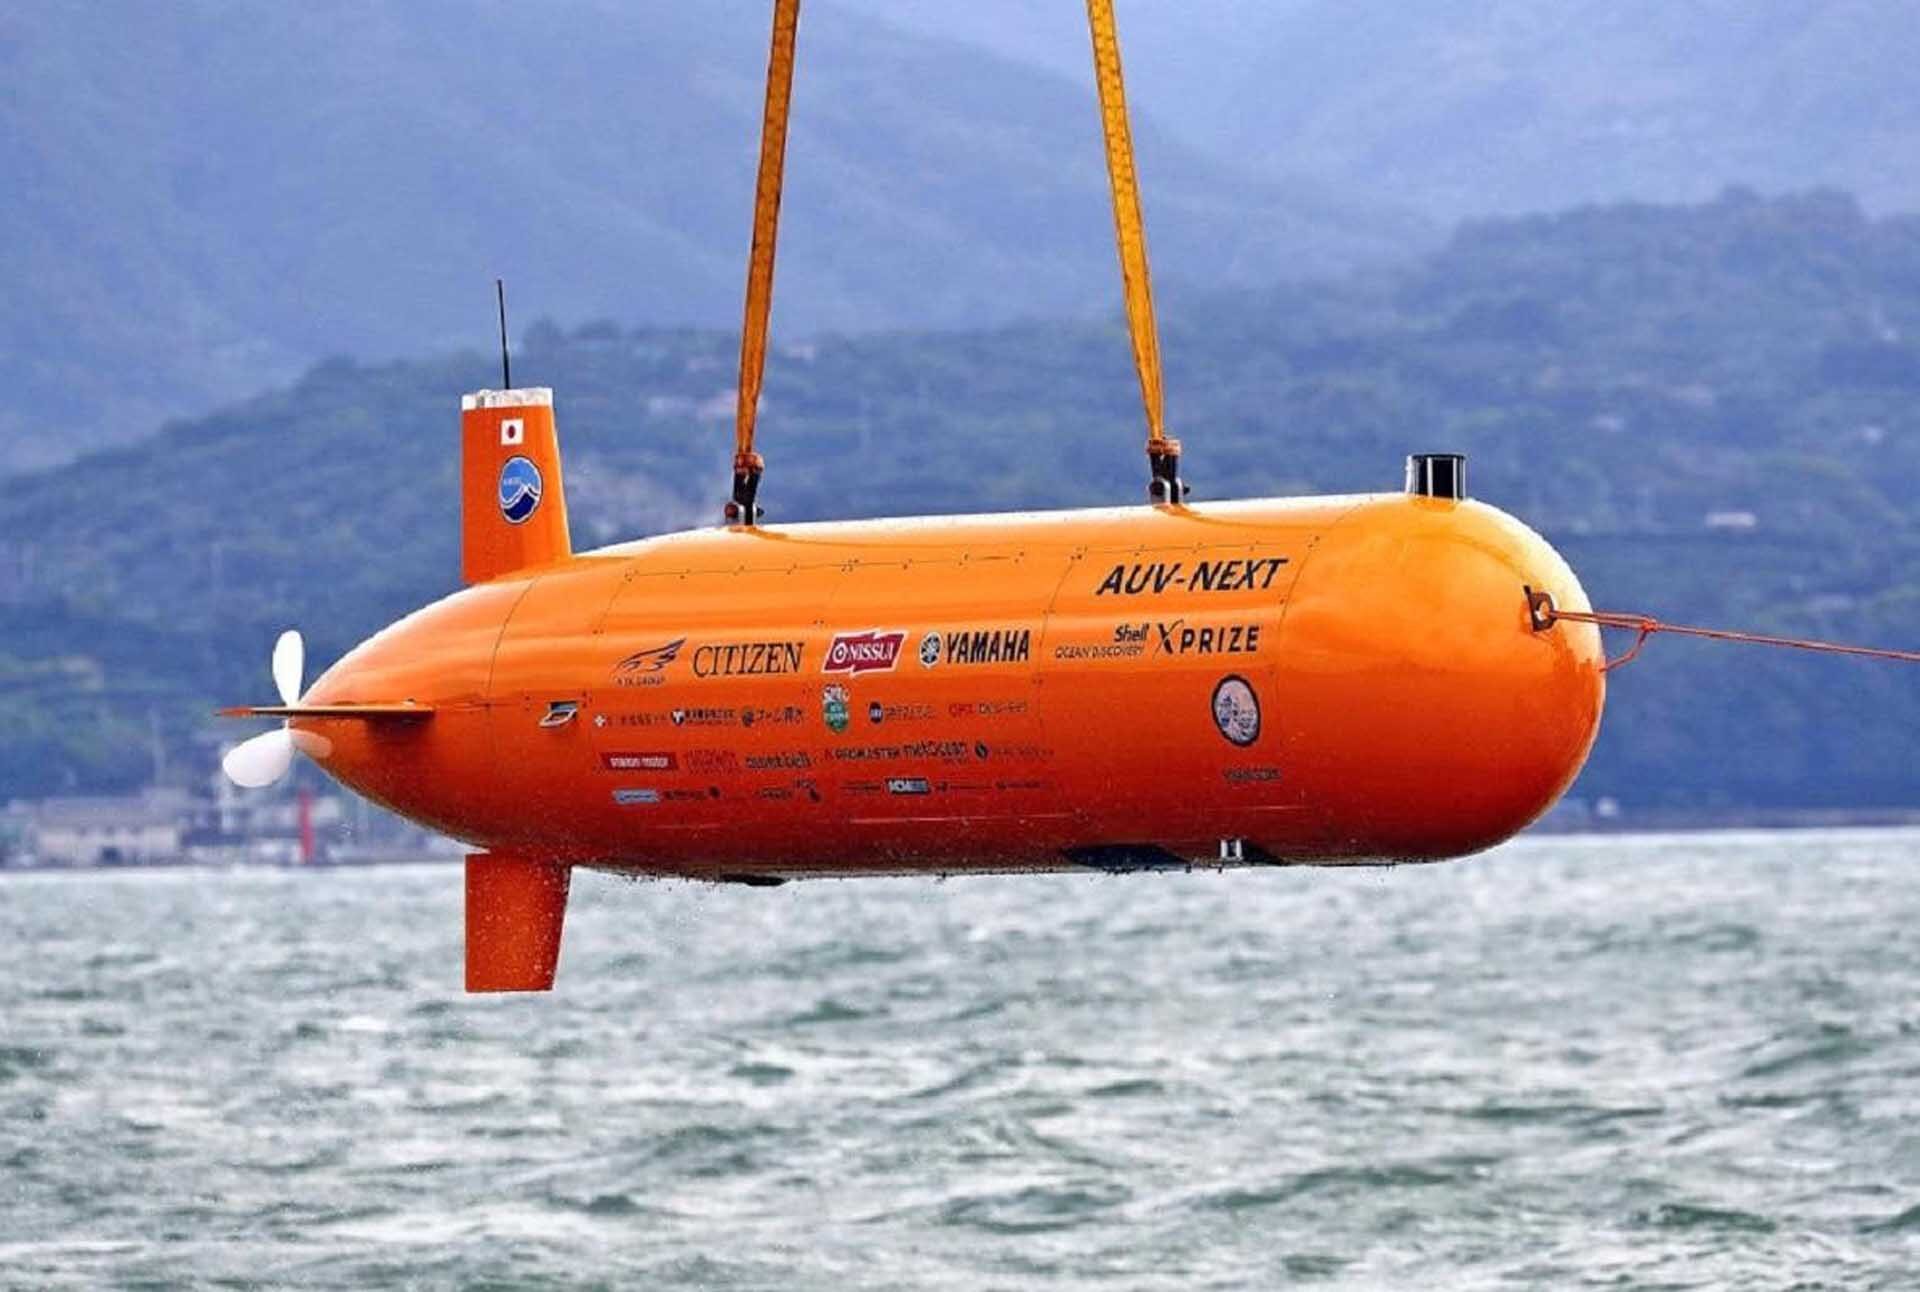 ญี่ปุ่นลุยทดสอบ “ยานยนต์ใต้น้ำอัตโนมัติ” ผลิตเอง-เพิ่มศักยภาพเฝ้าระวังใต้น้ำ